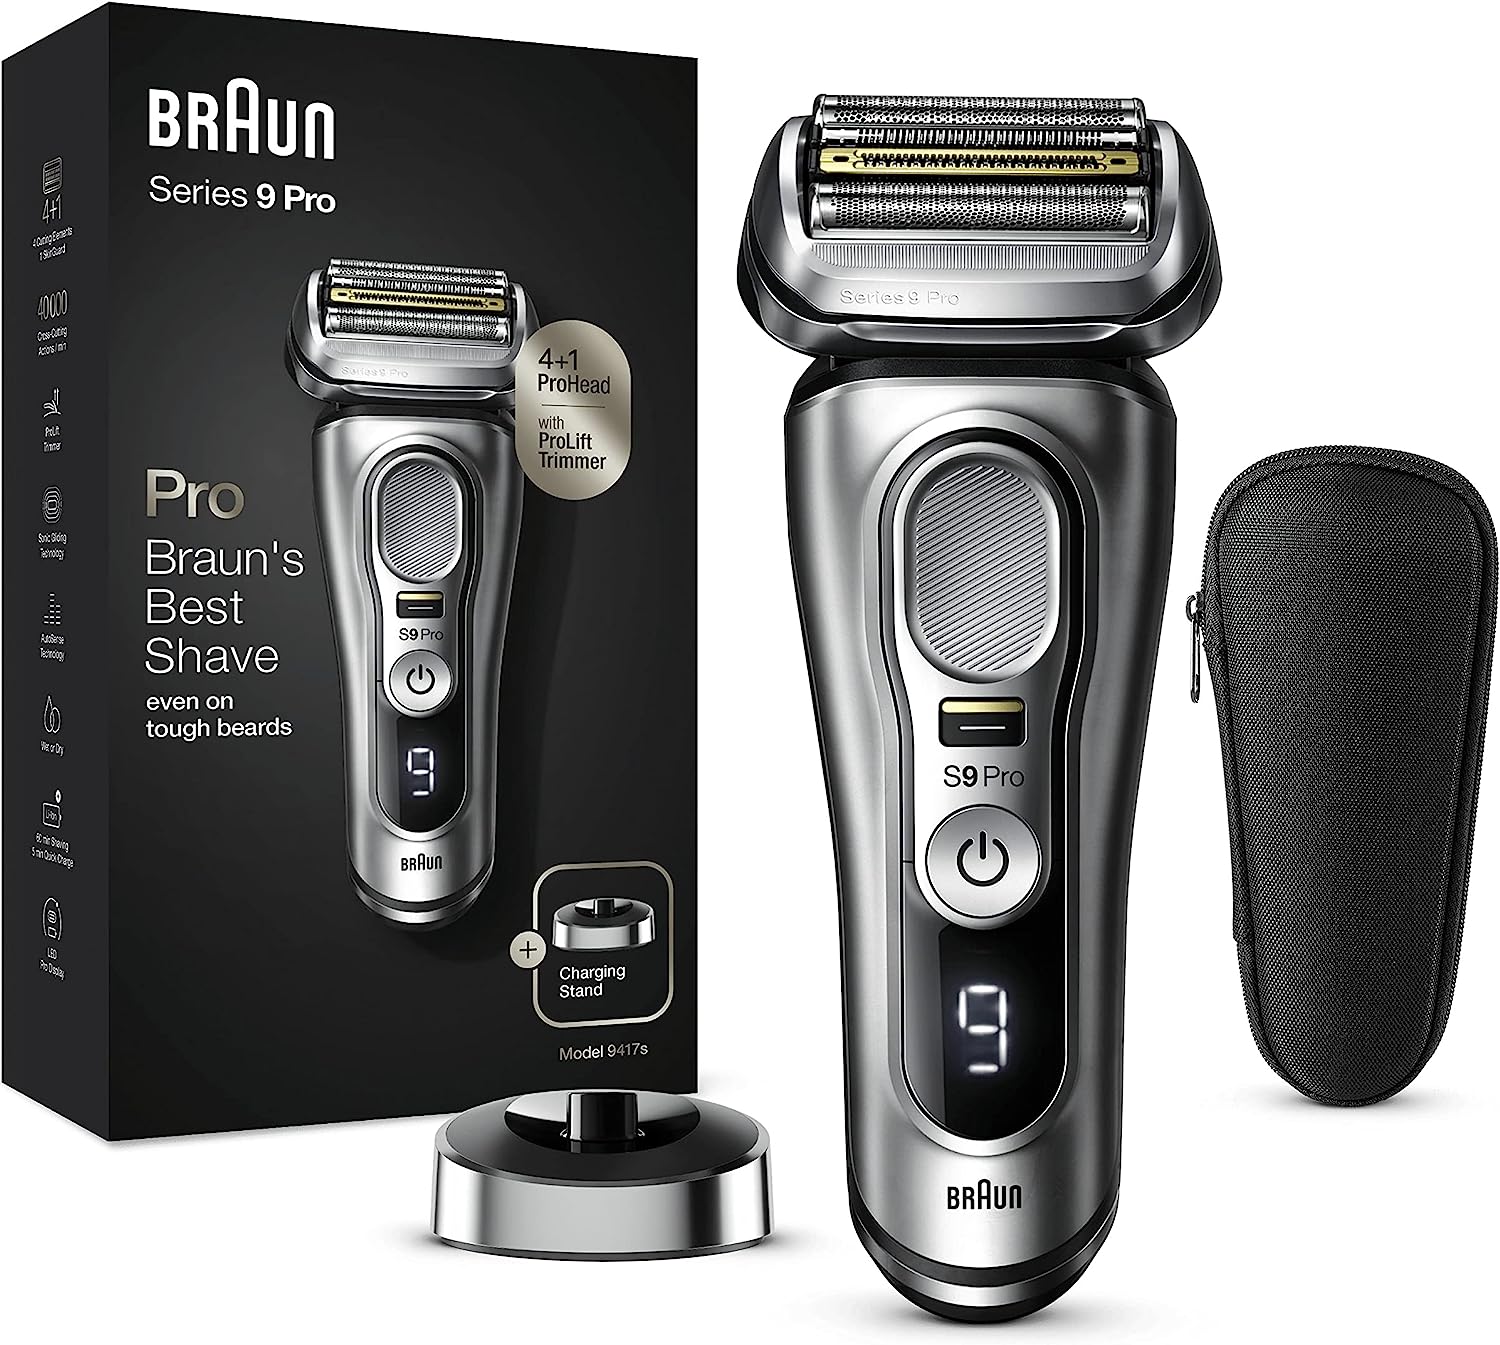 Braun Series 9 Pro vs. Braun Series 9 Pro Plus vs. Braun Series 9